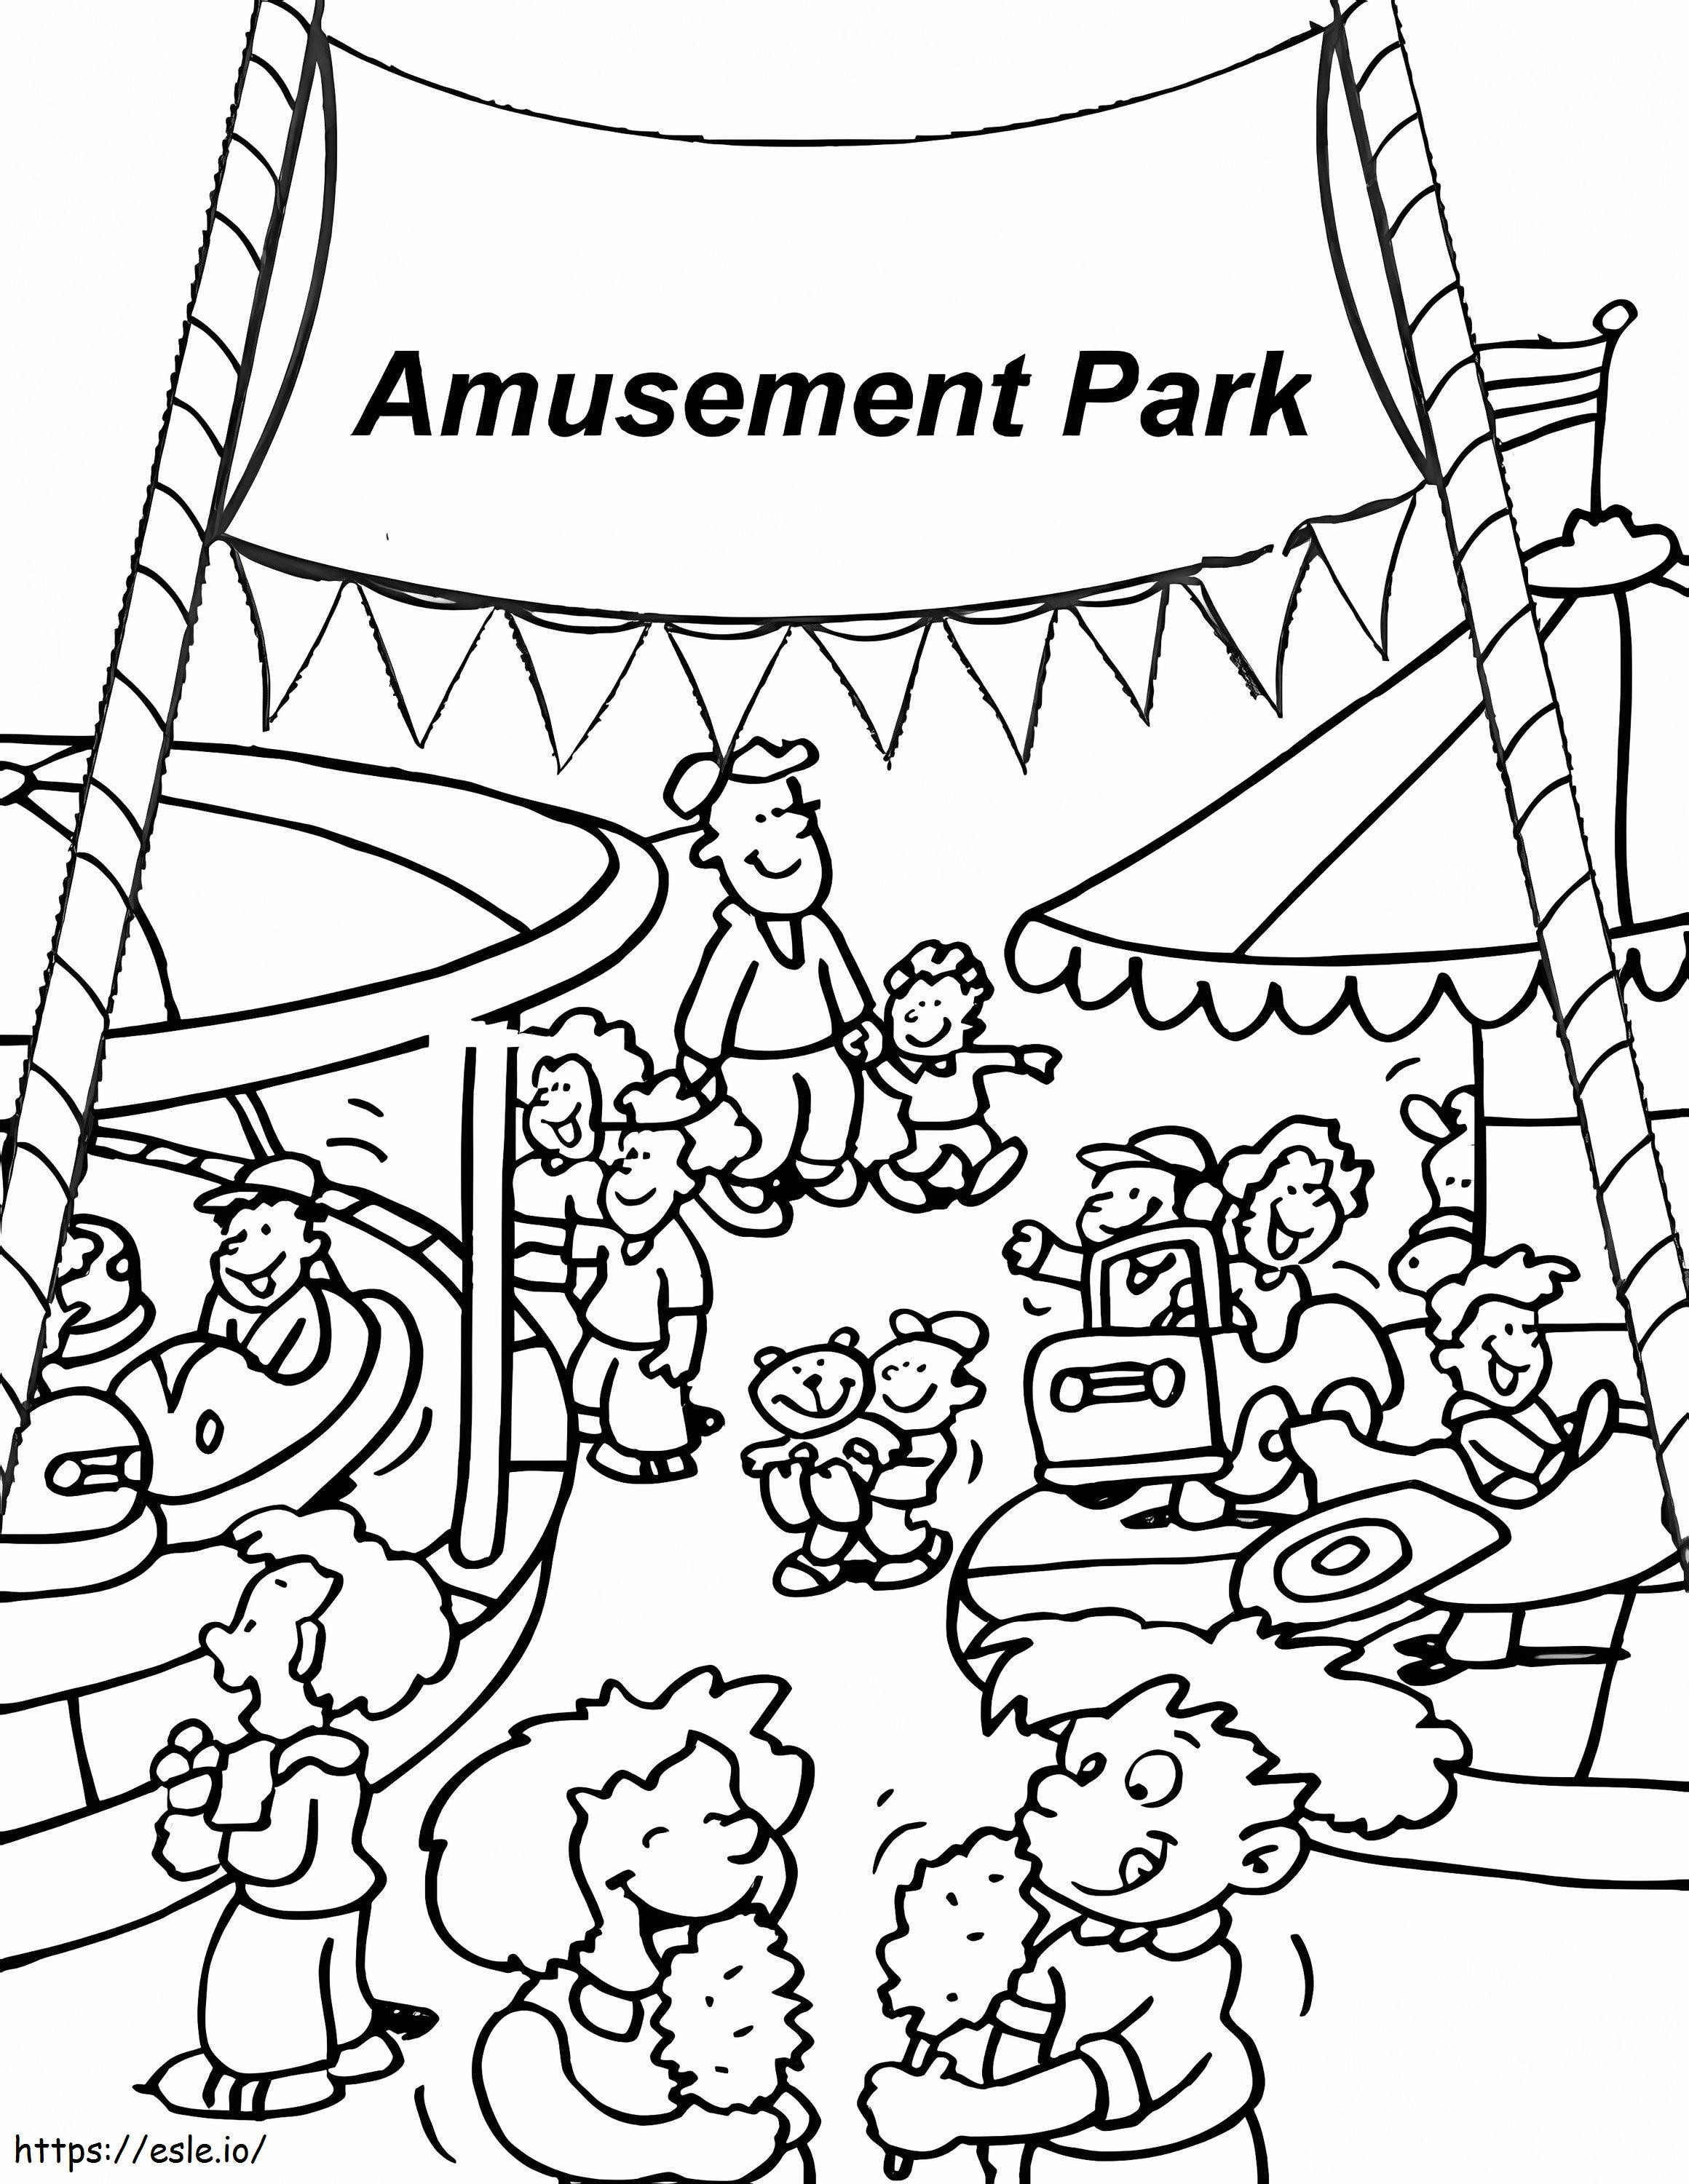 Printable Amusement Park coloring page